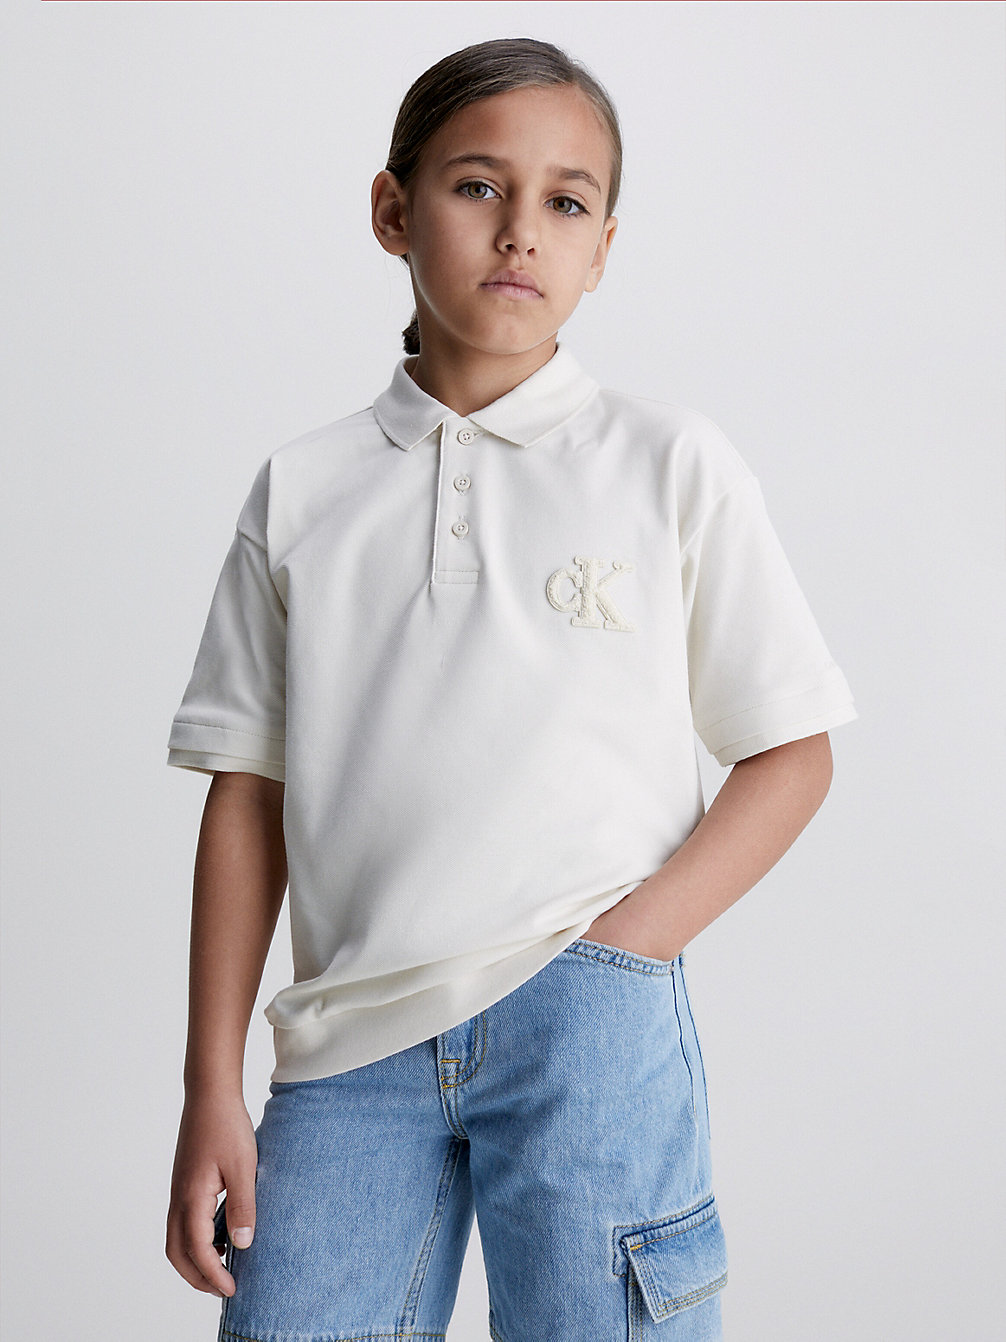 WHITECAP GRAY > Poloshirt Mit Logo > undefined Jungen - Calvin Klein